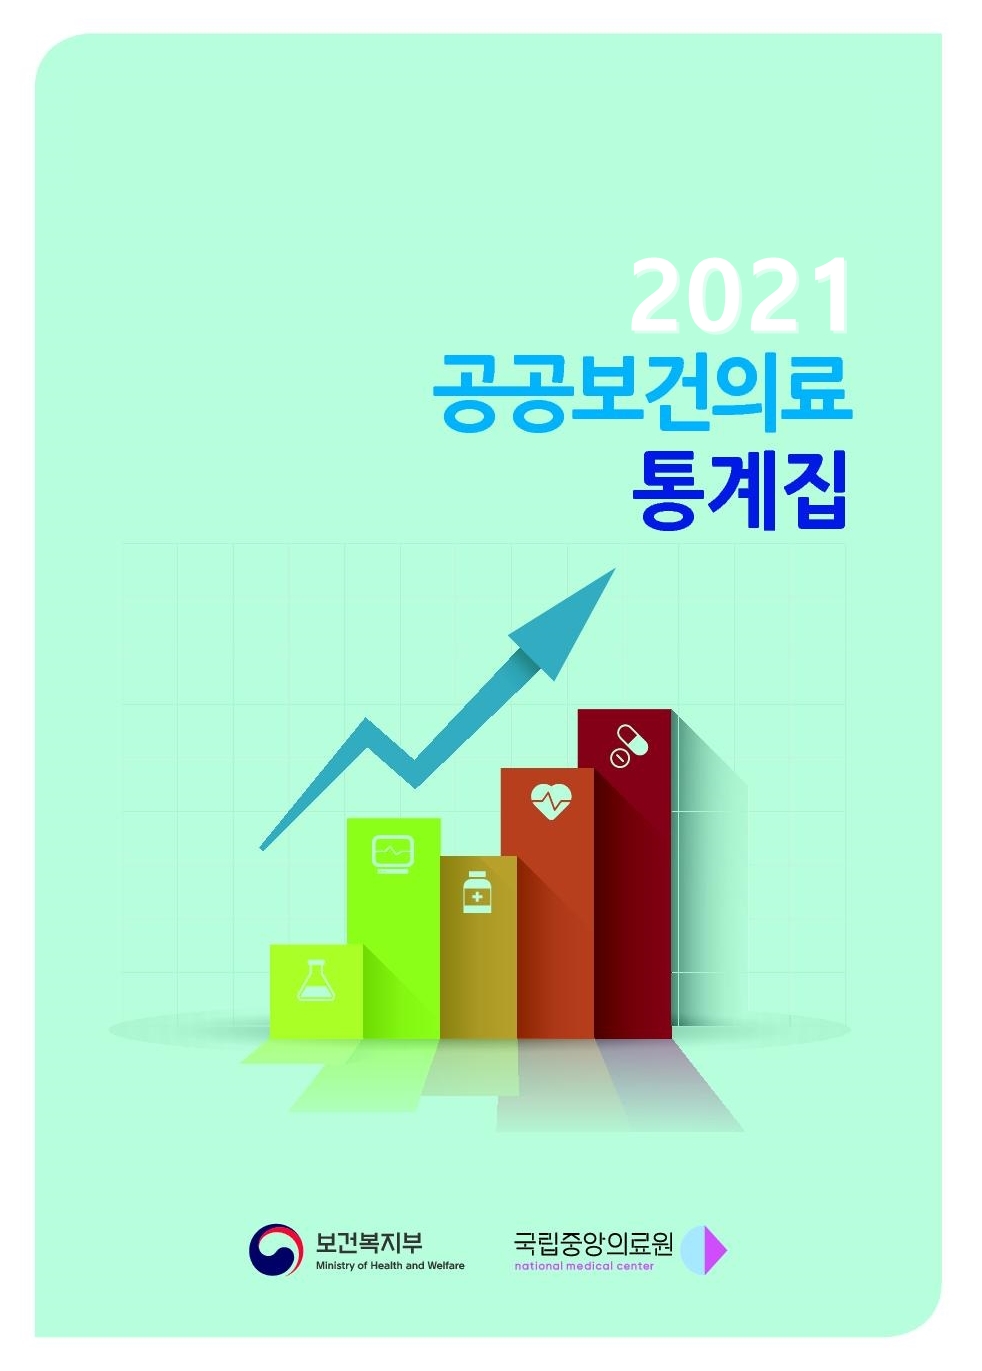 「2021년 공공보건의료 통계집」